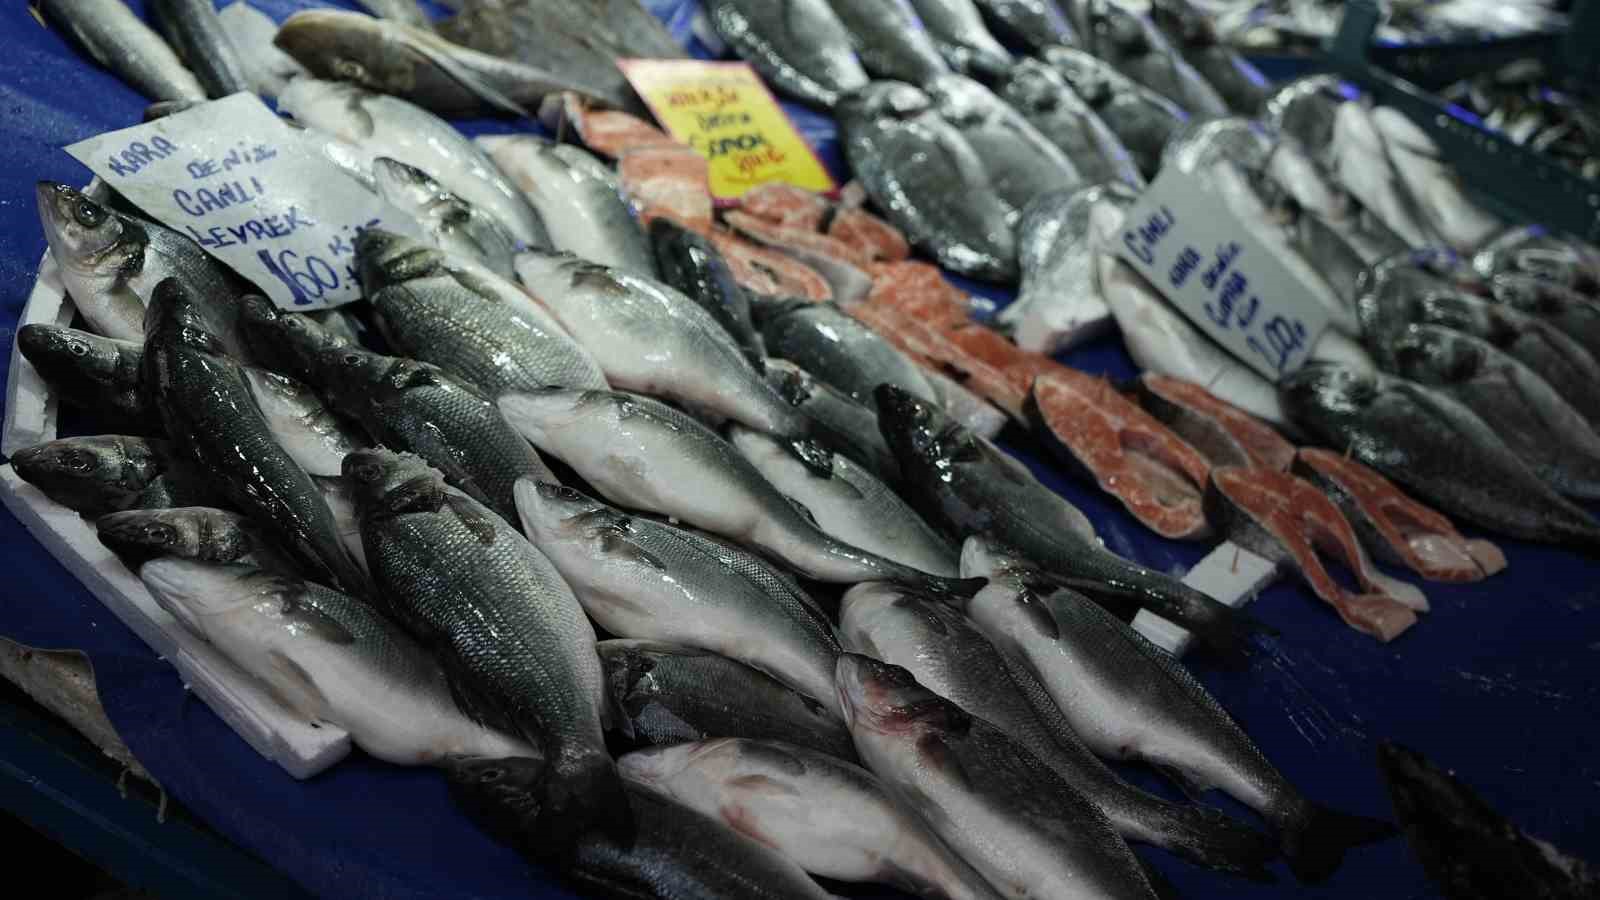 Hava şartları balık fiyatlarını etkiledi